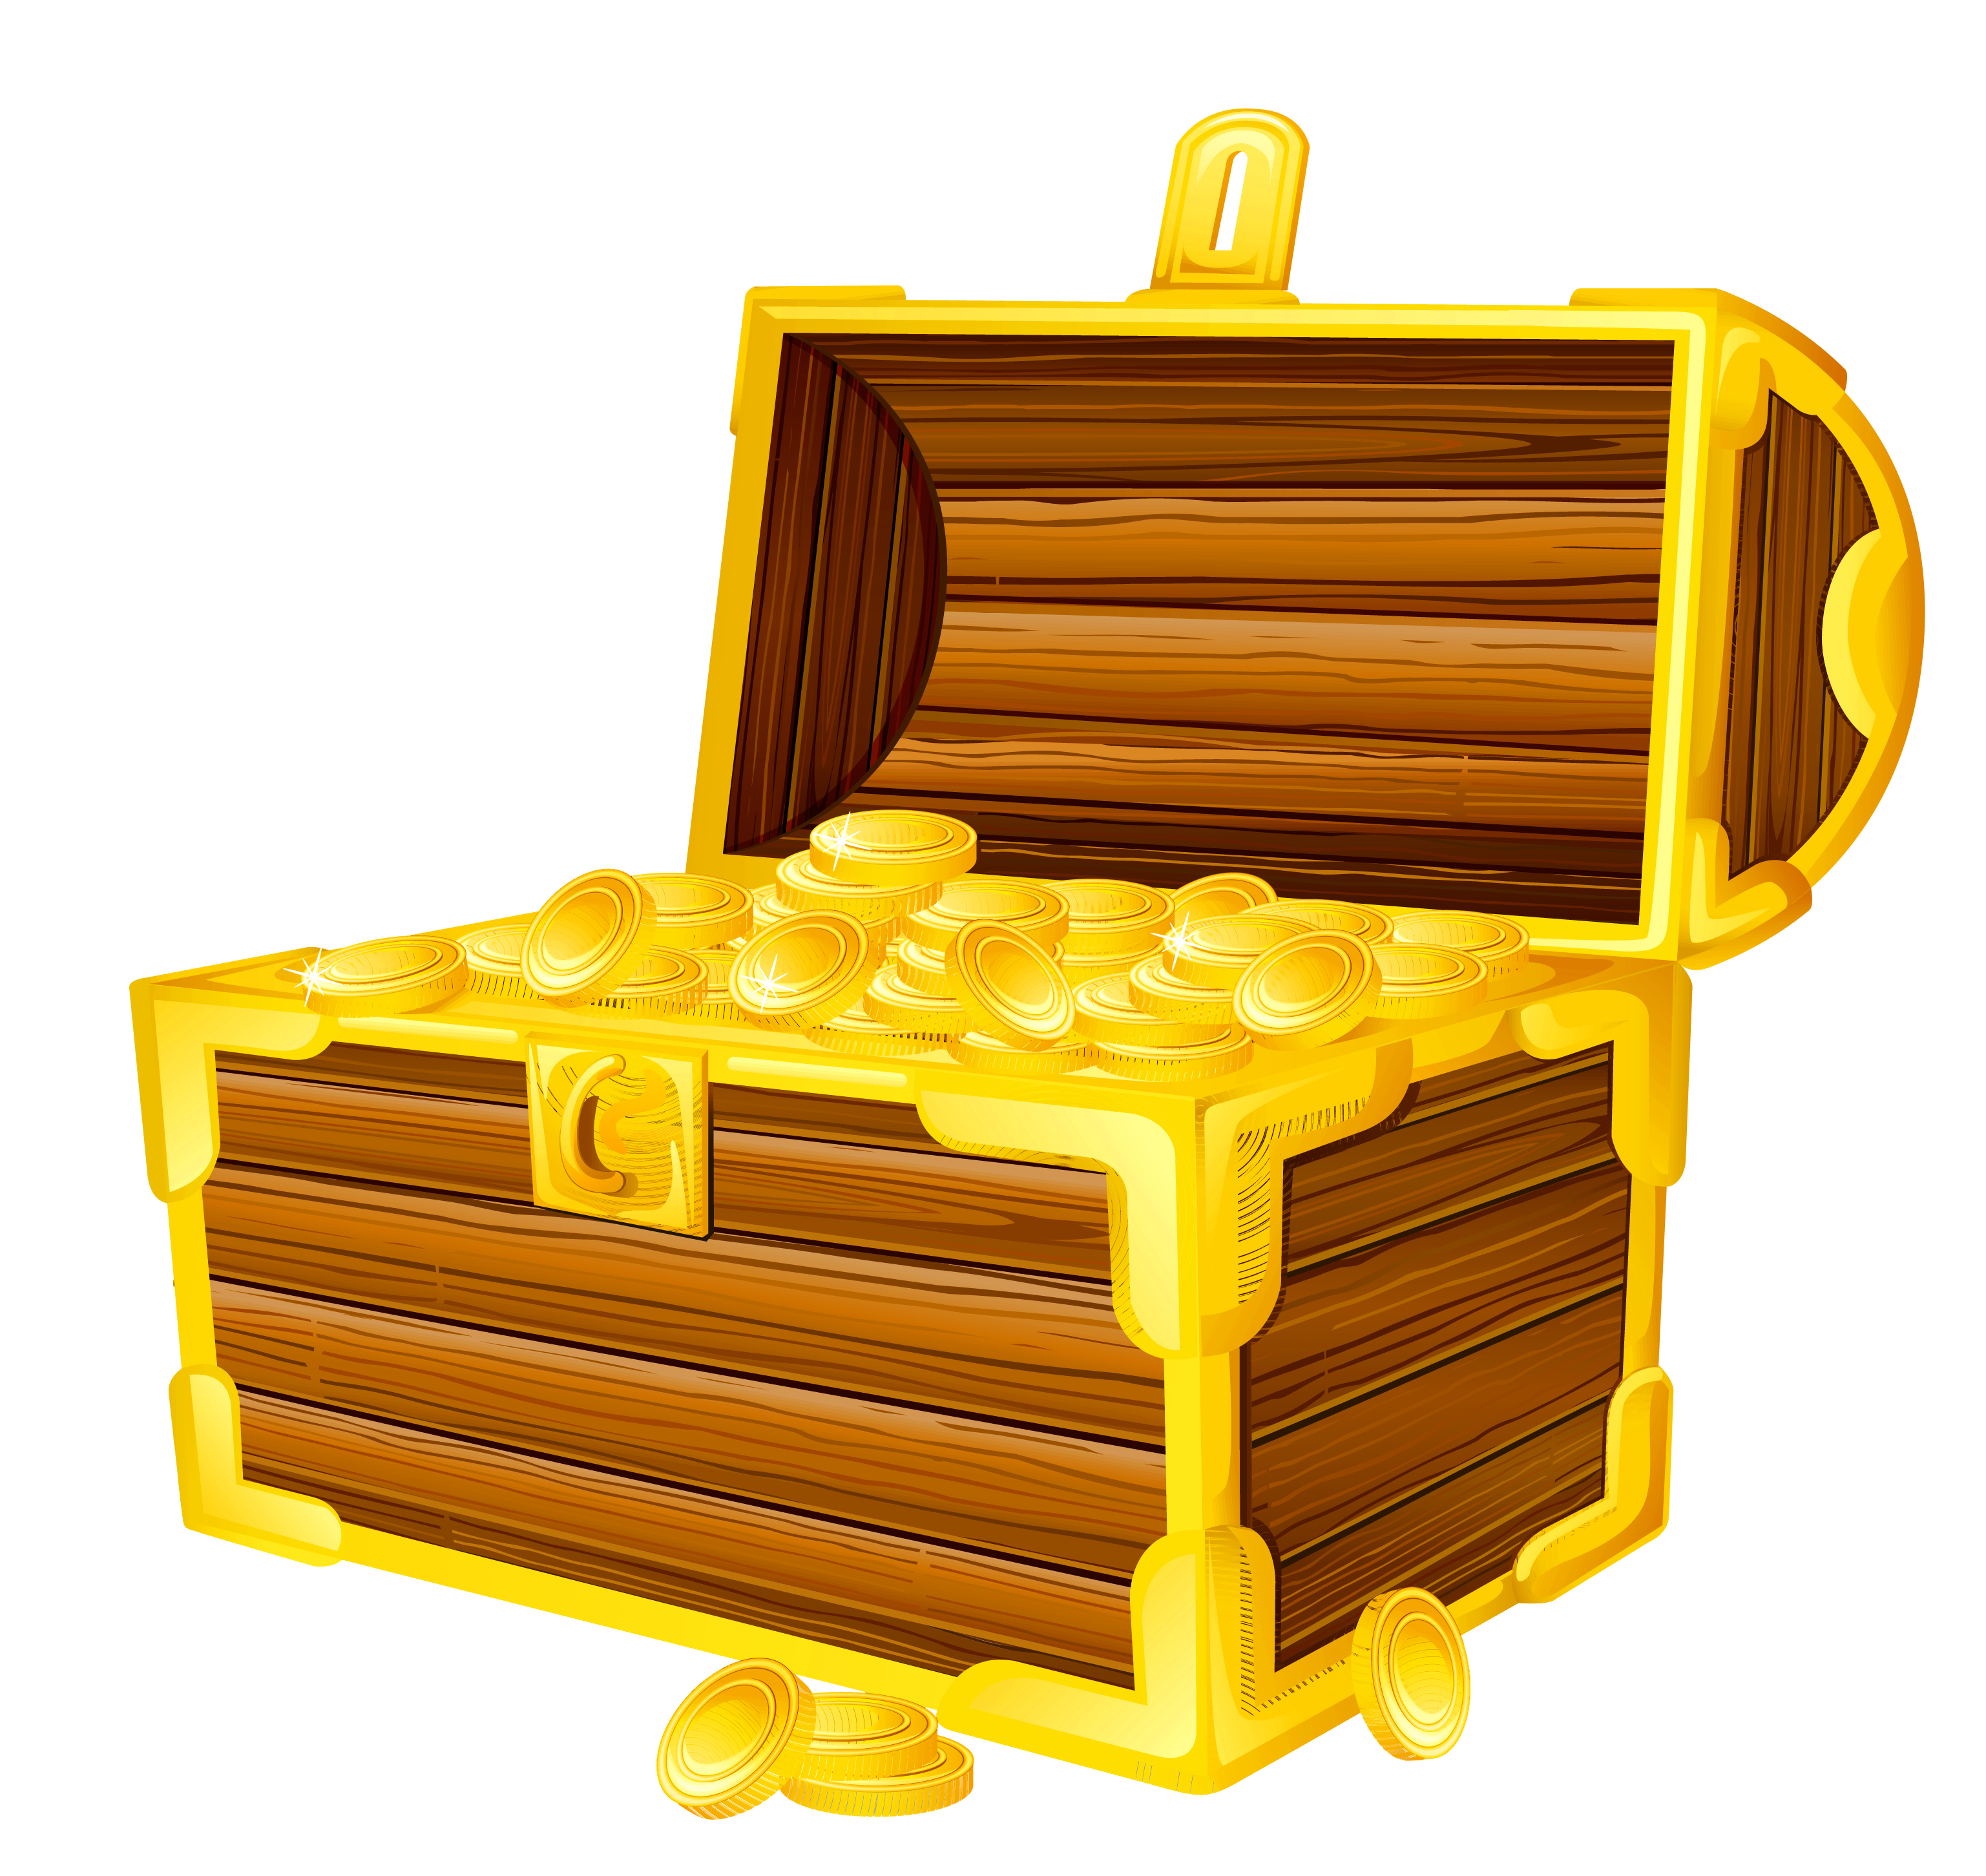 Treasure chest picture clipar - Clipart Treasure Chest